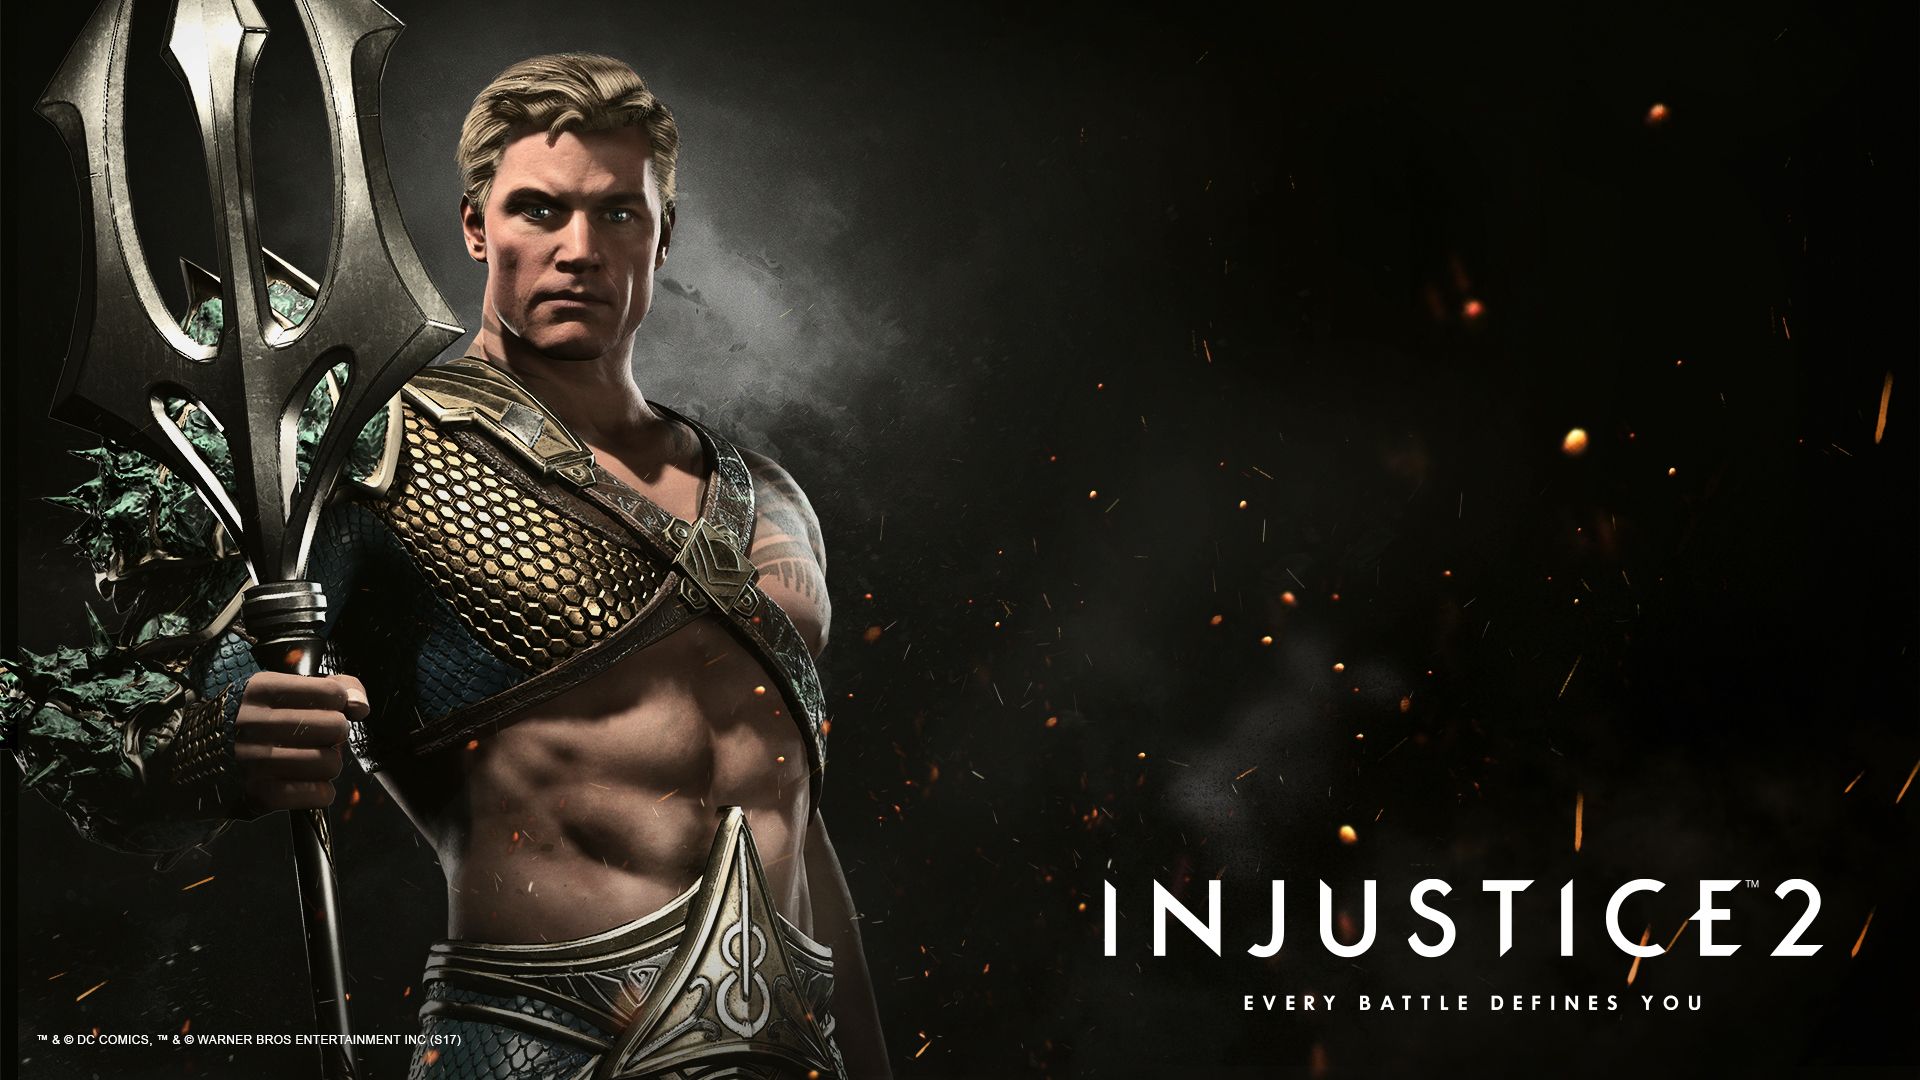 Aquaman Injustice 2 , HD Wallpaper & Backgrounds